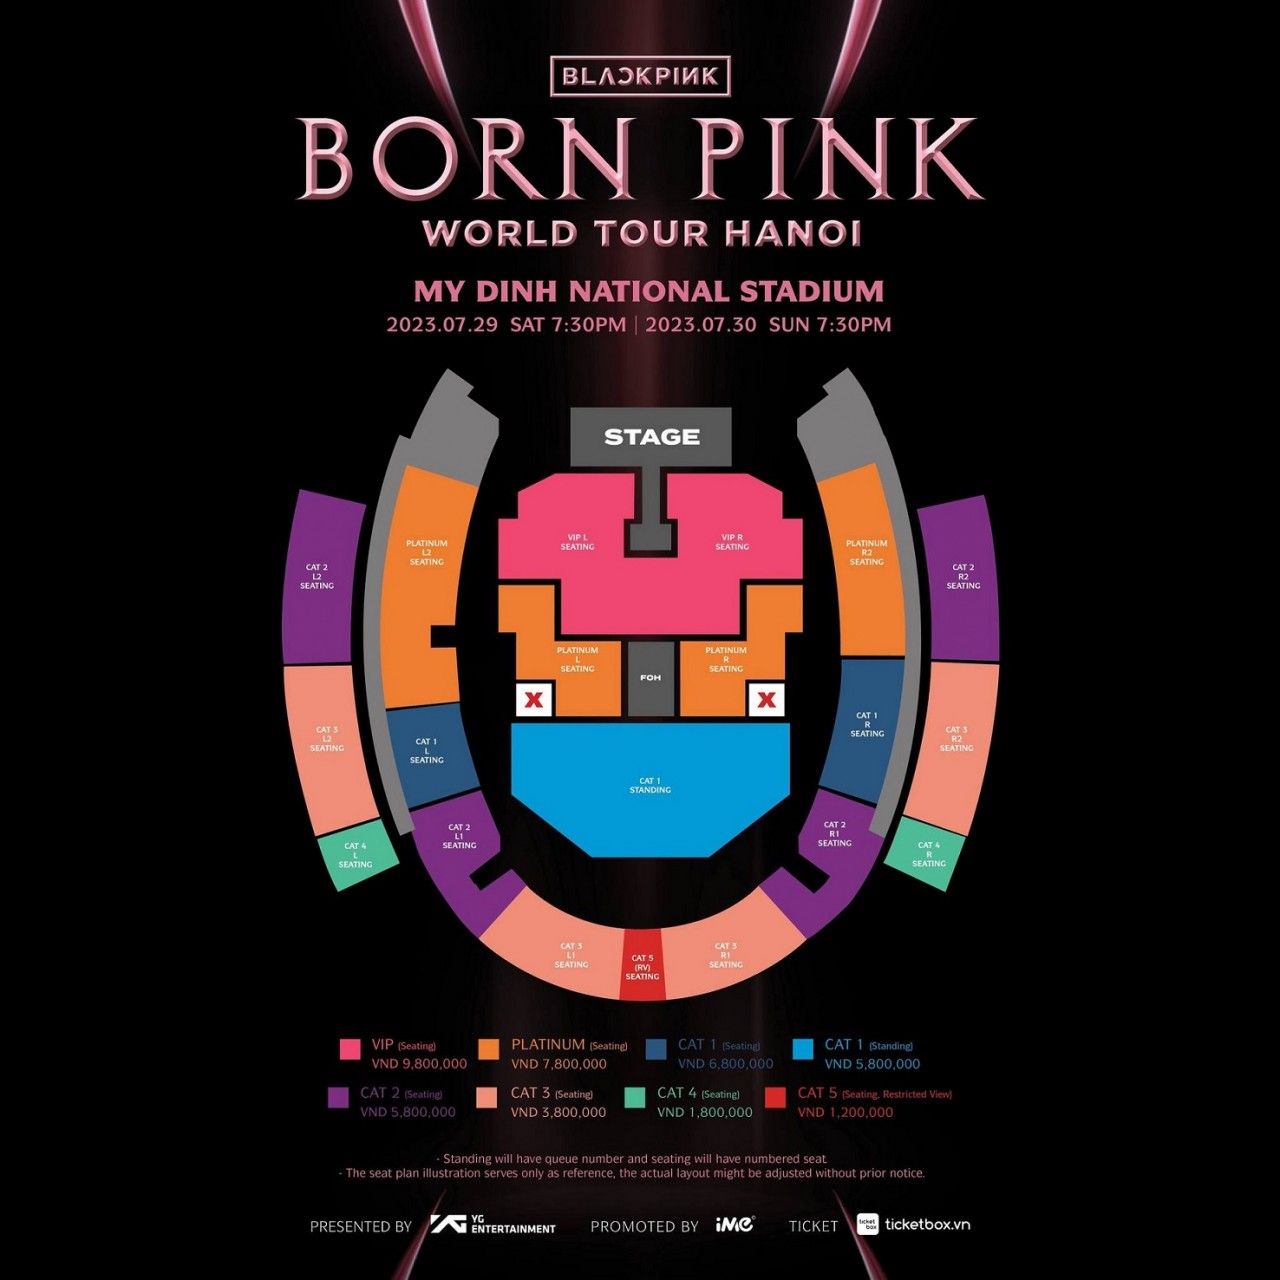 BlackPink biểu diễn tại Mỹ Đình: Công bố mức giá và danh sách các bài hát